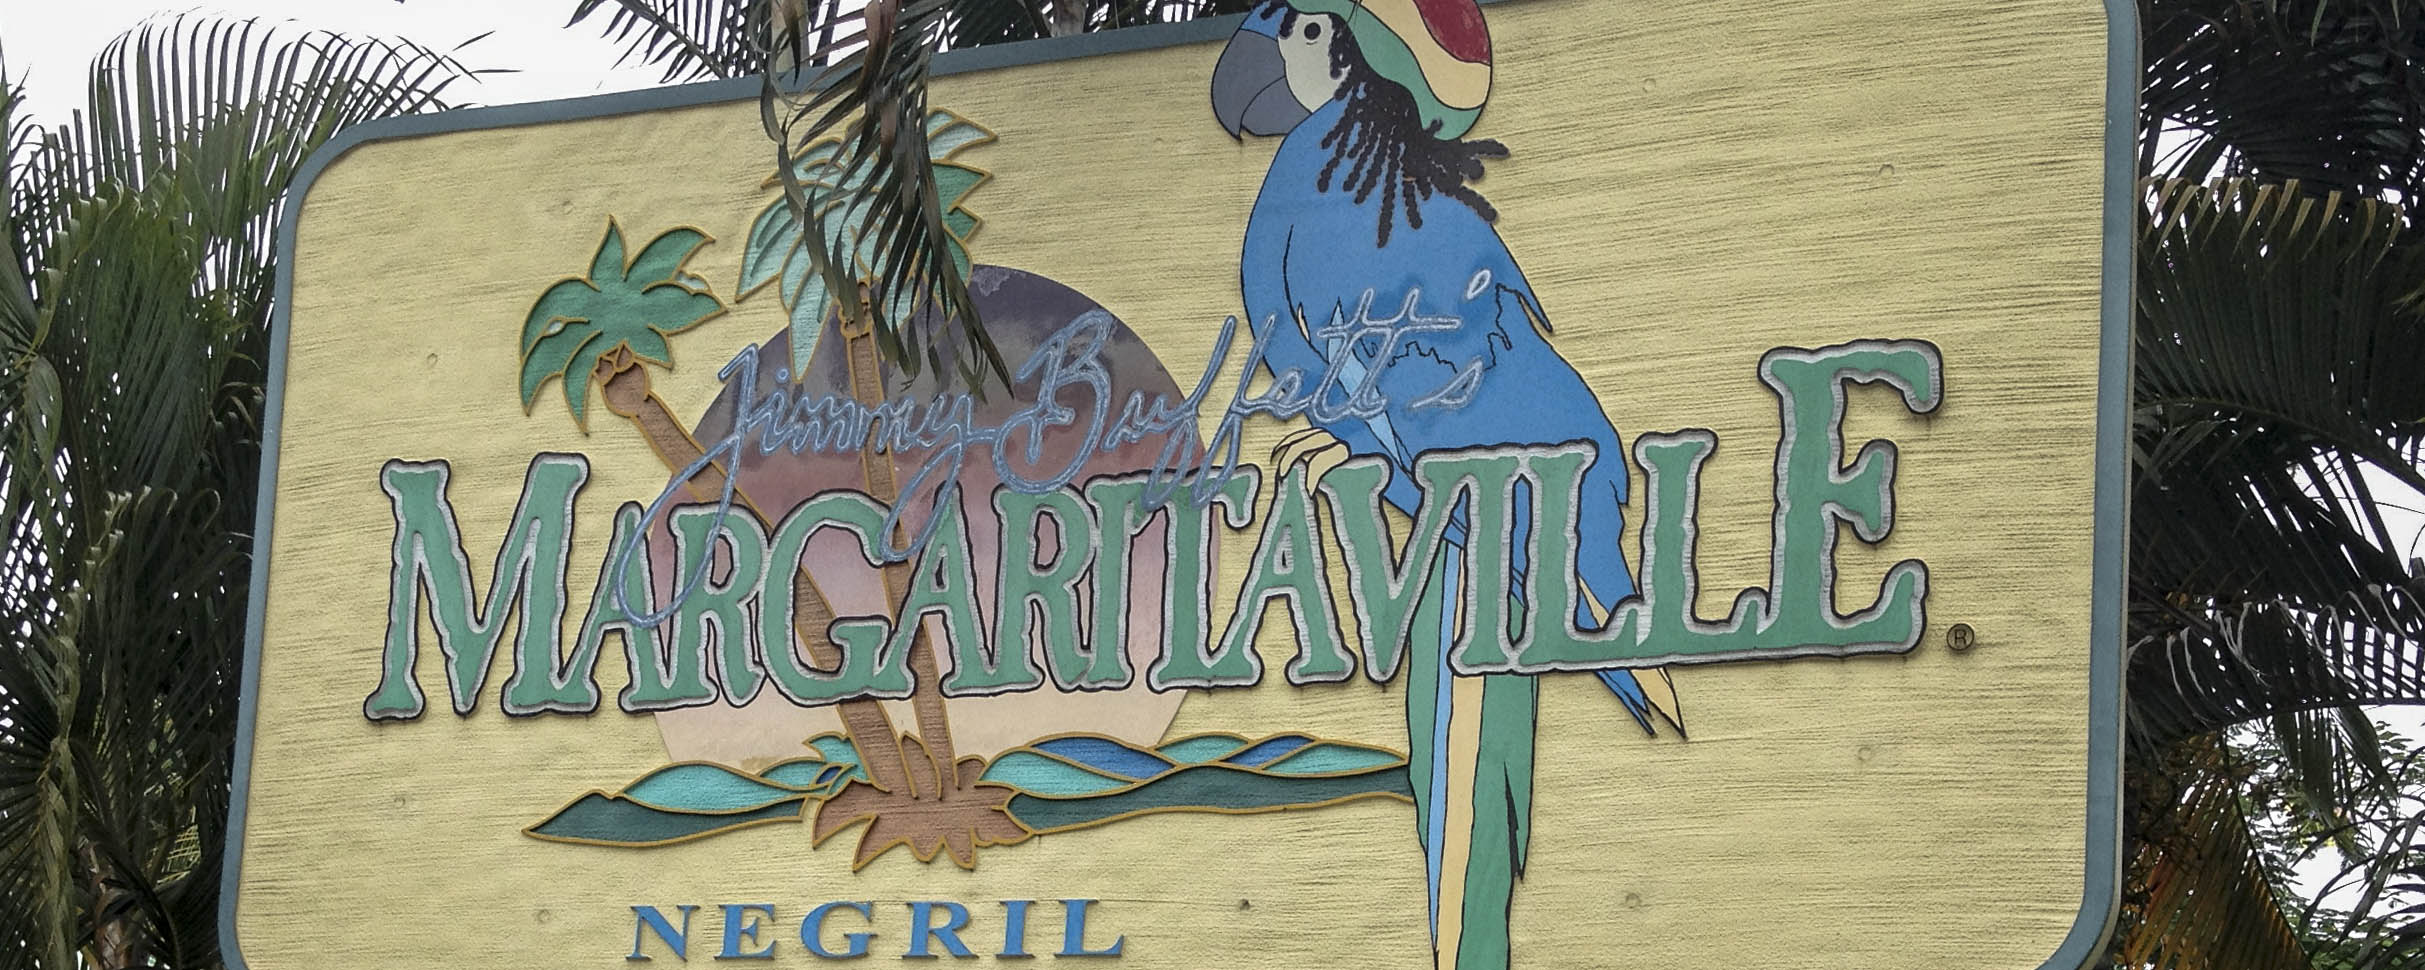 Margaritaville - Negril Jamaica